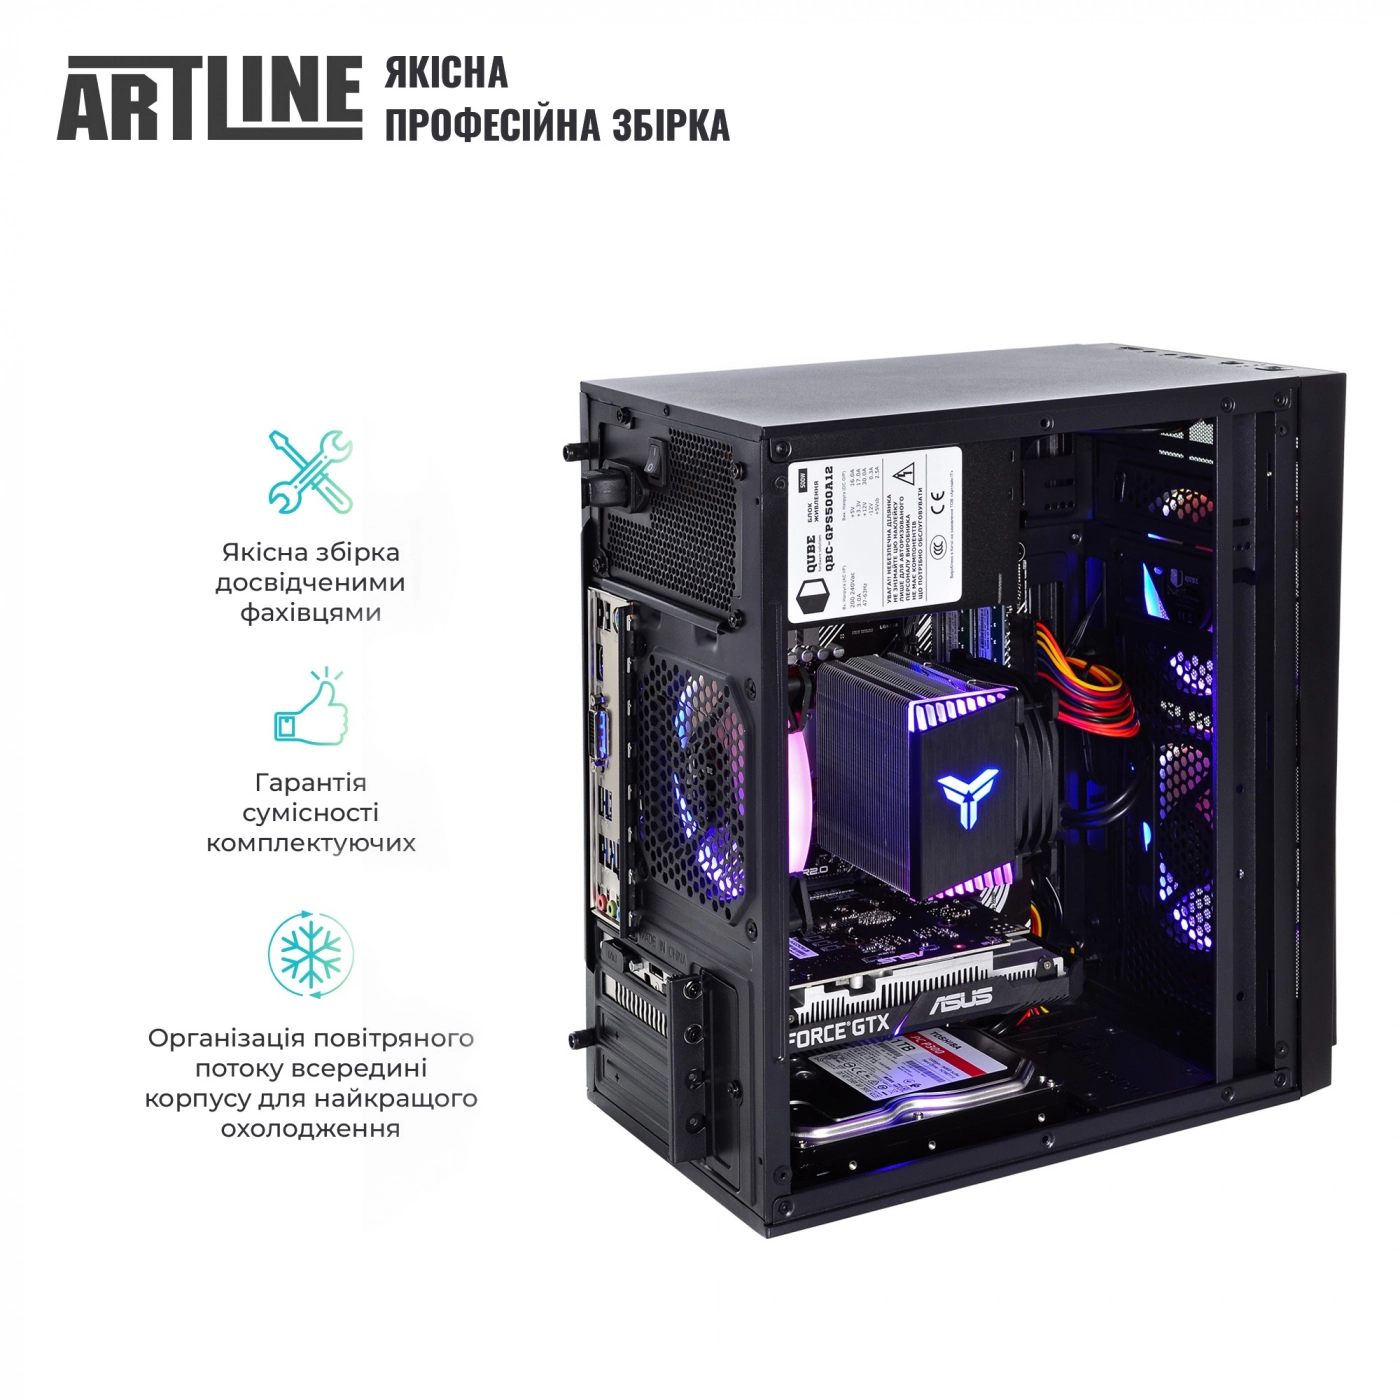 Купить Компьютер ARTLINE Gaming X46v36 - фото 5